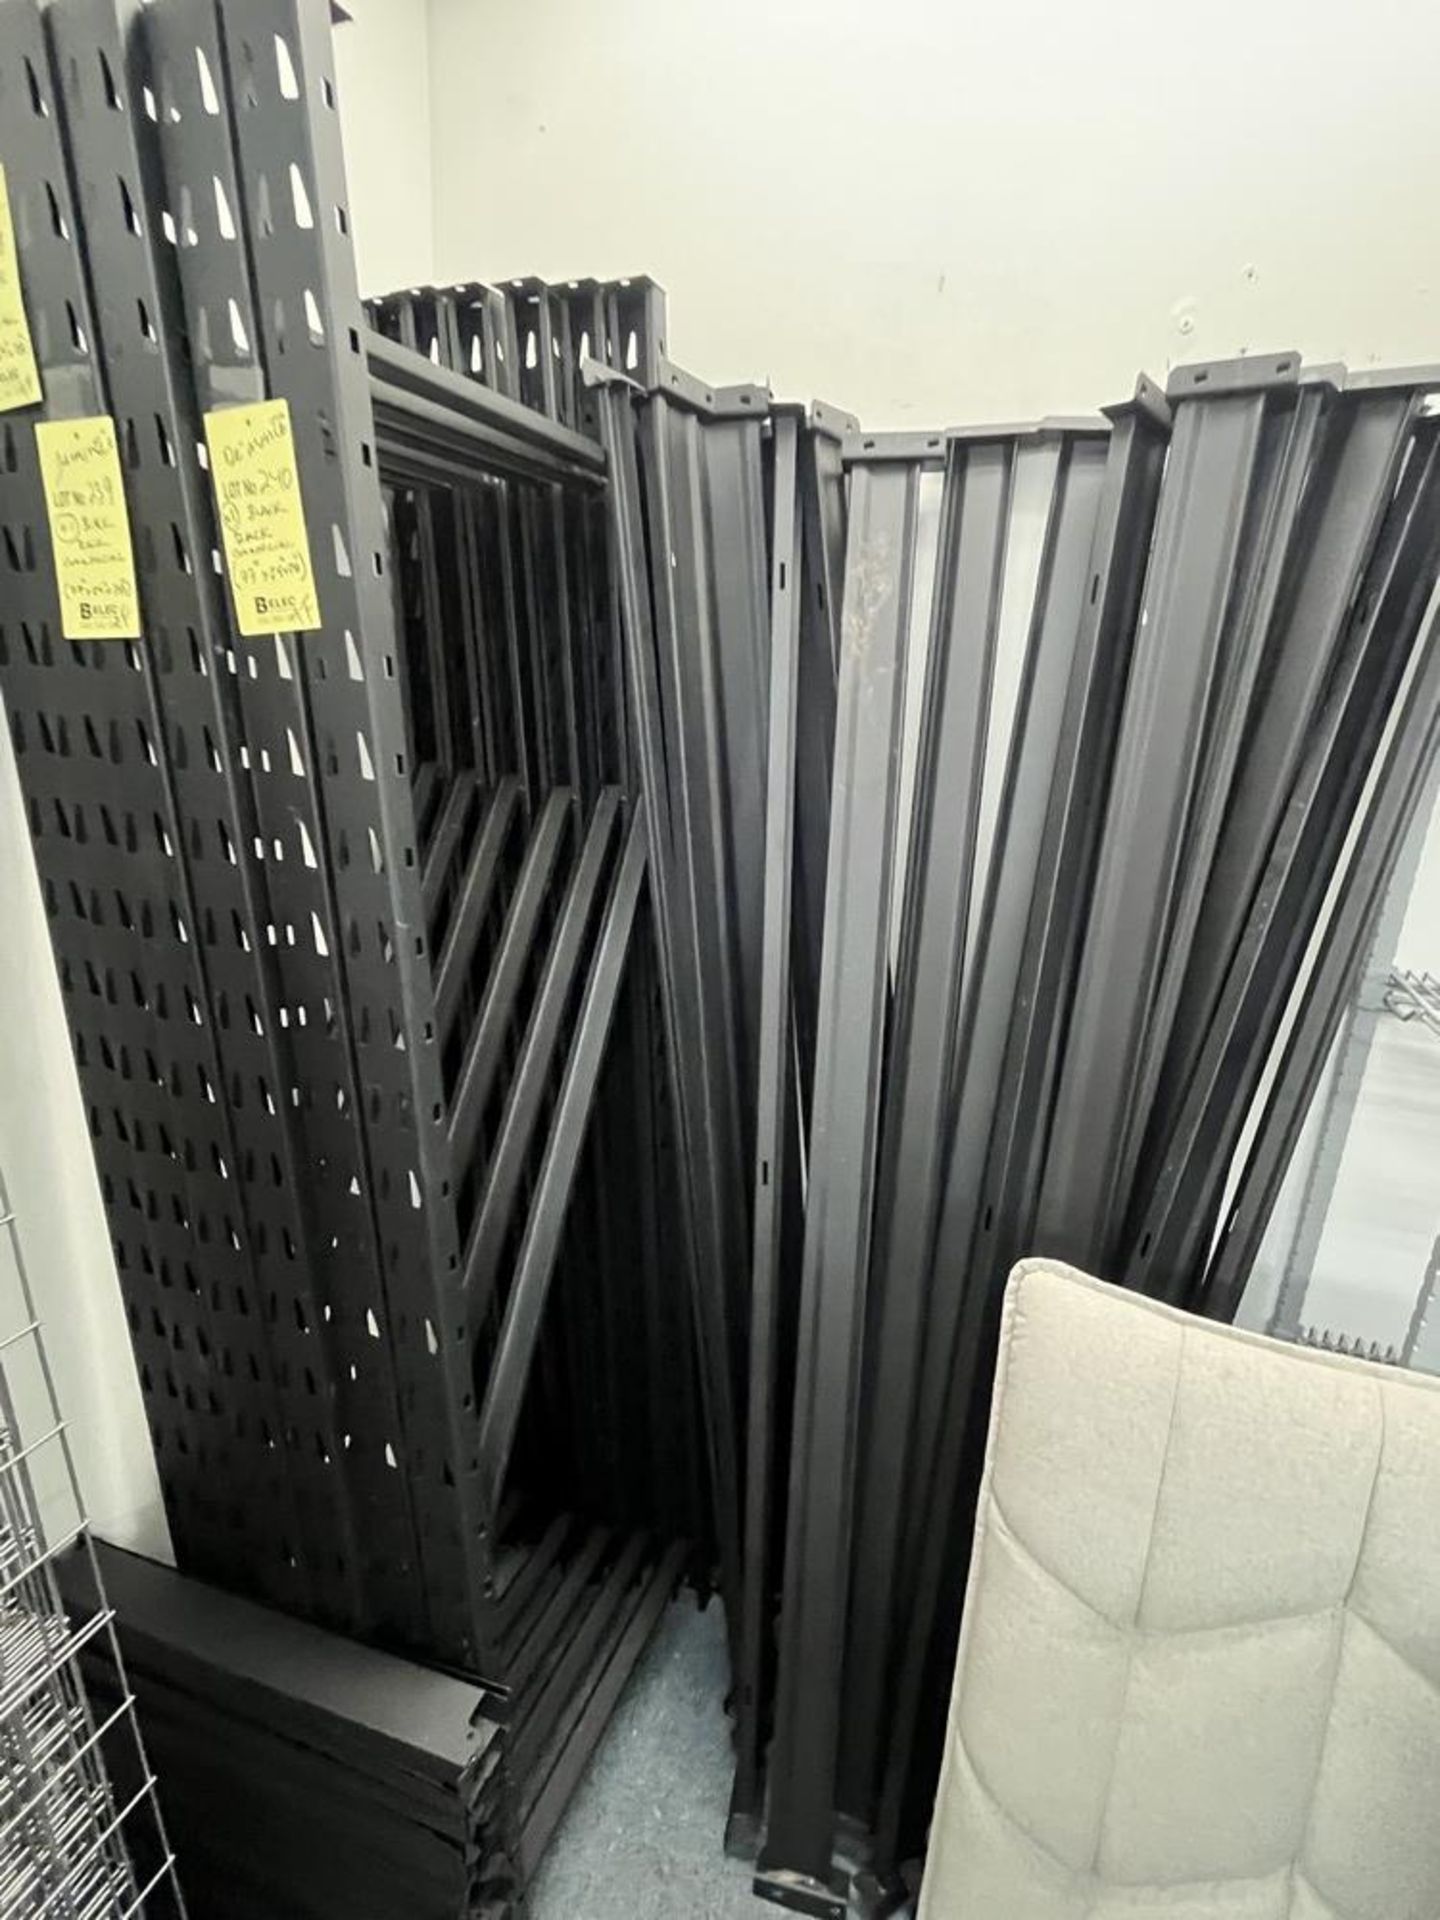 Rack commerciale, noir, métal matte - COMME NEUF 77 " x 24 x 78" - Déjà DÉMONTÉE - Image 2 of 2